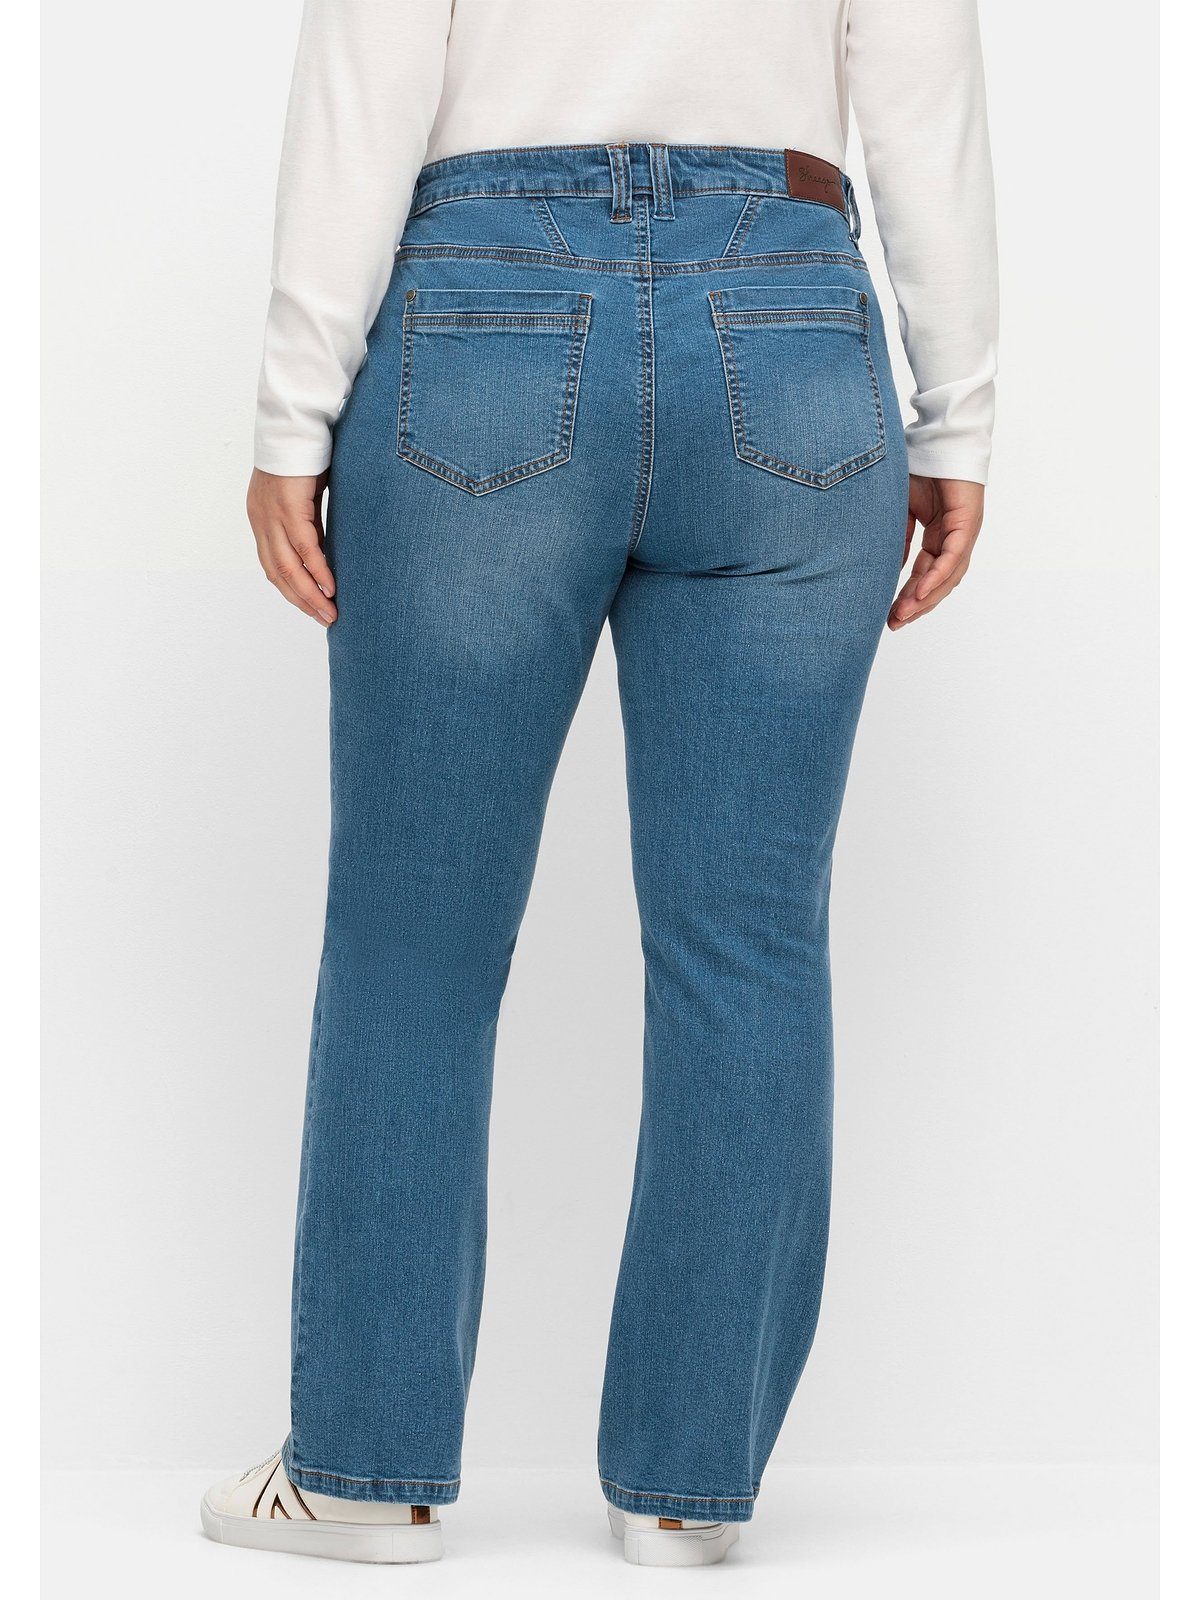 Beinen viel blue ideal SUSANNE schmalen Bootcut-Jeans Größen Große und Bauch Denim Sheego bei